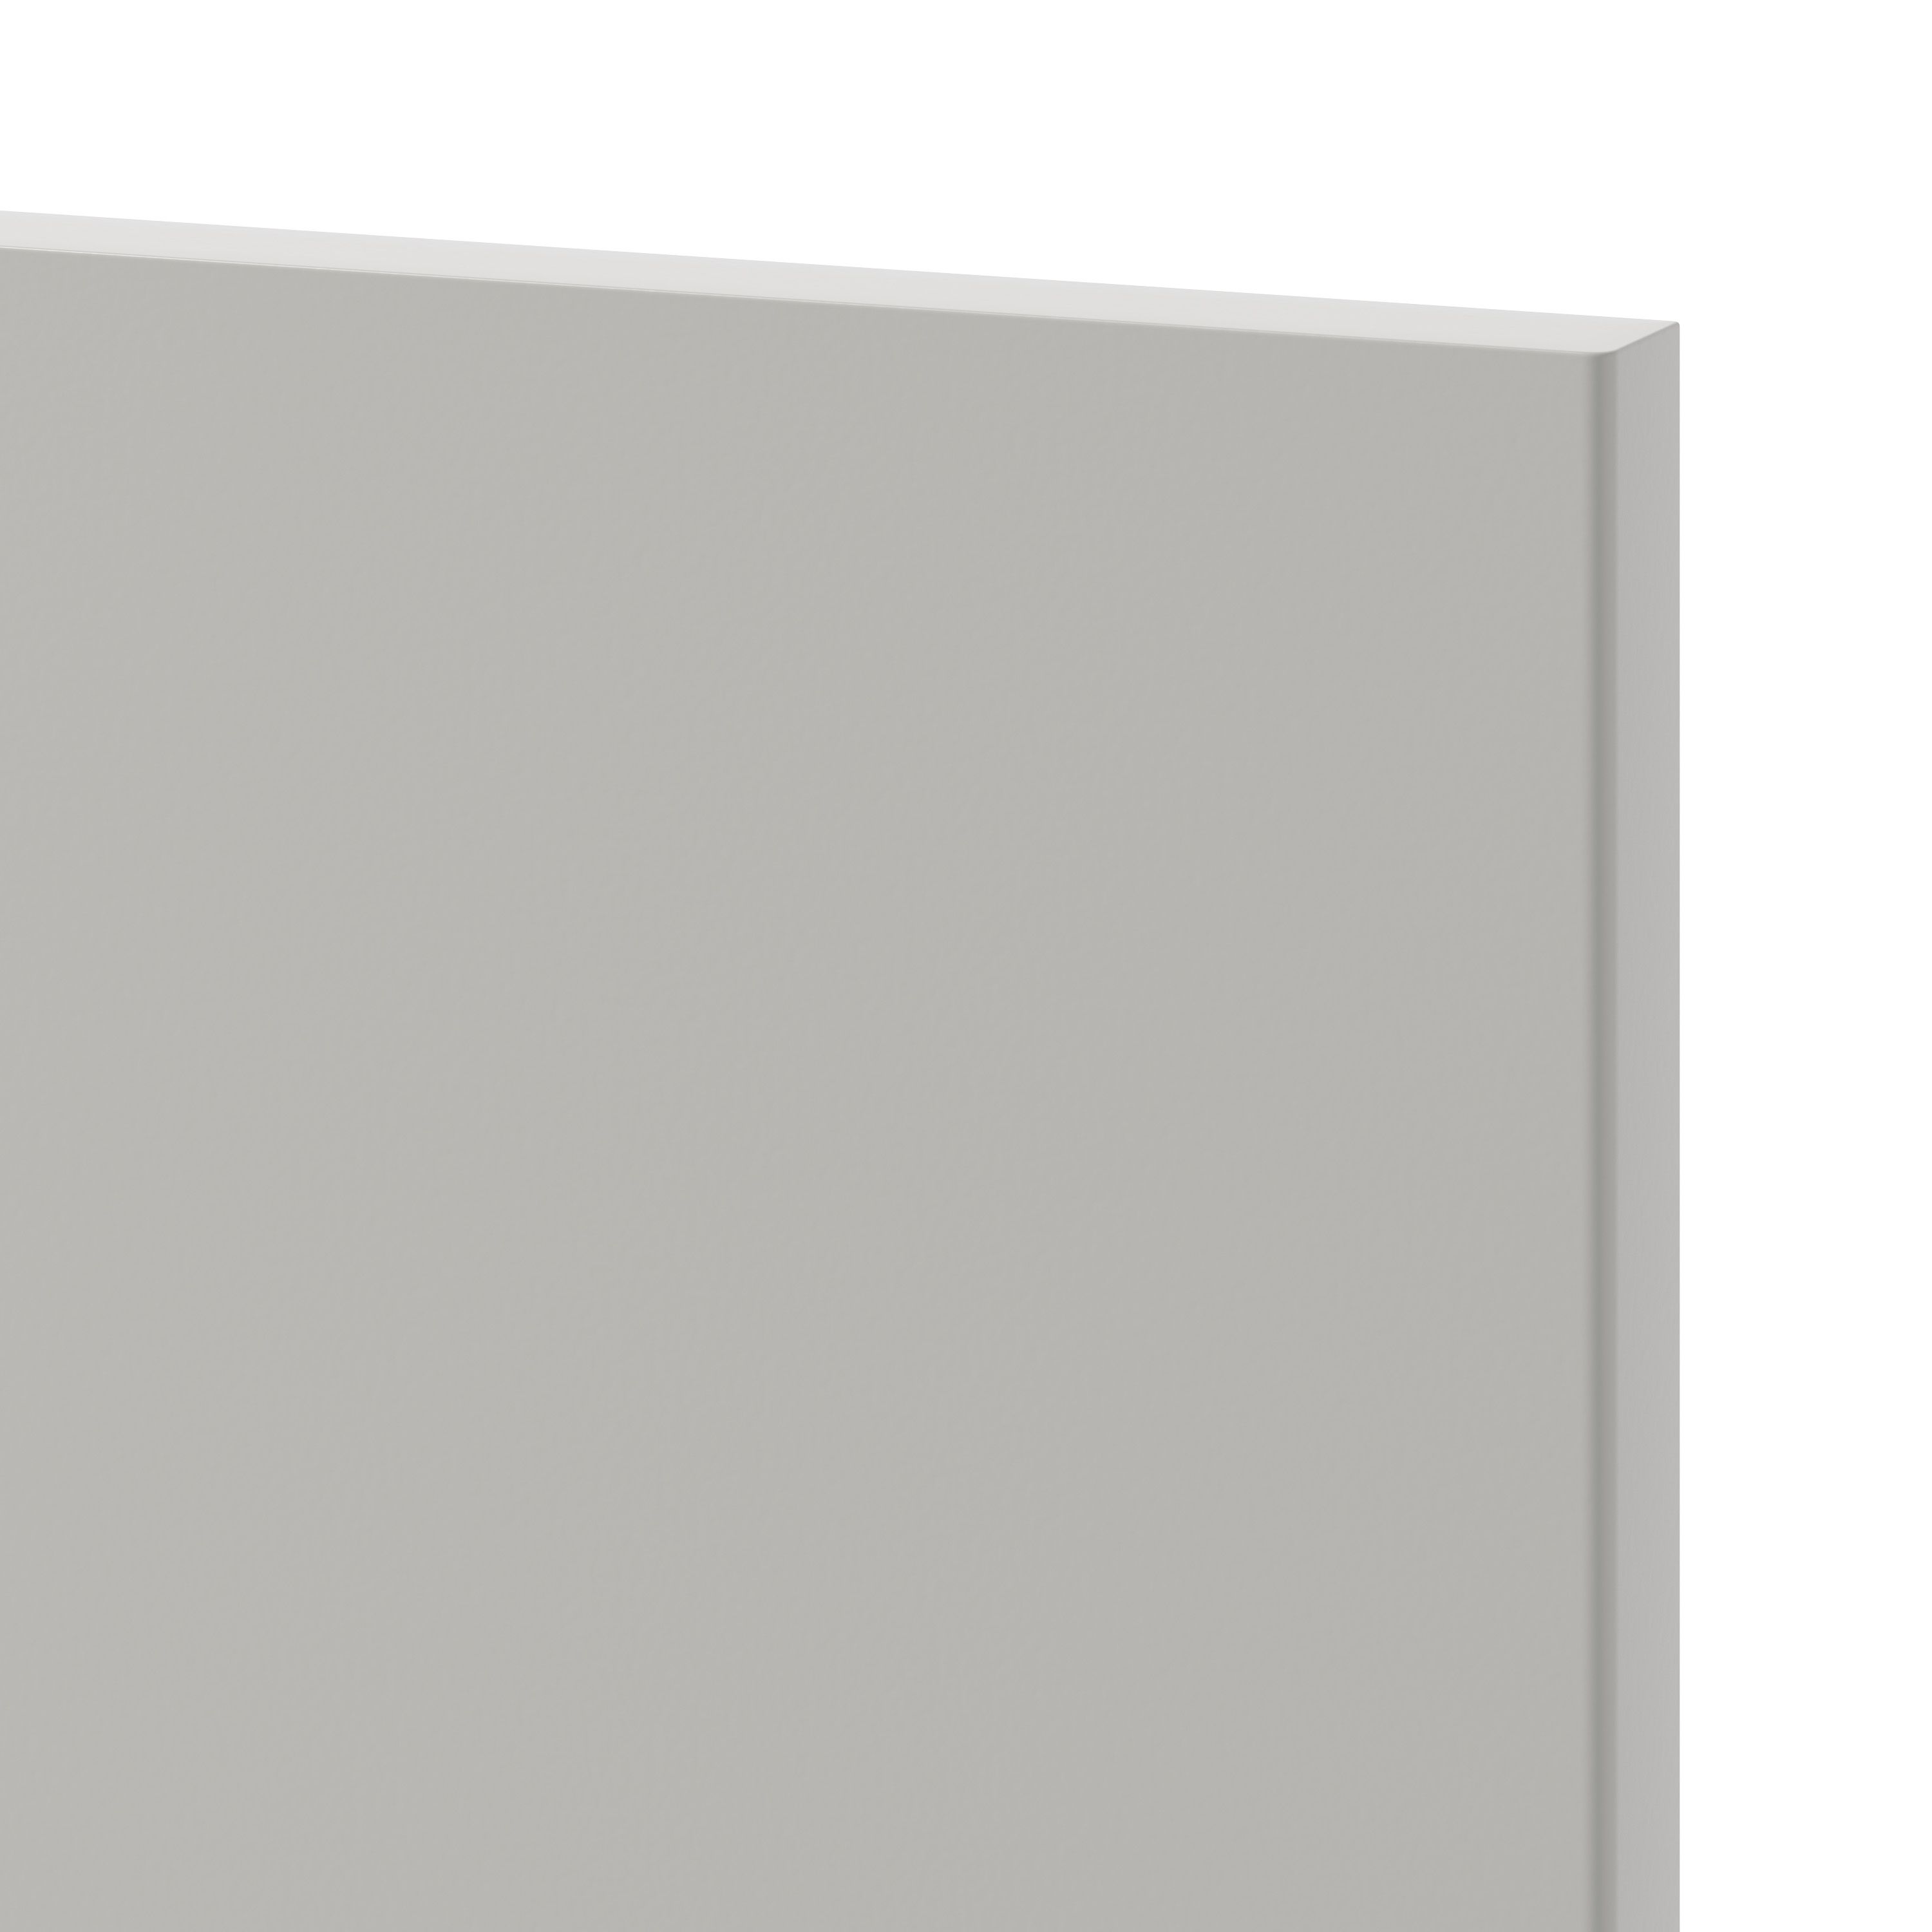 GoodHome Stevia Matt Pewter grey slab 70:30 Tall larder Cabinet door (W)300mm (H)1467mm (T)18mm